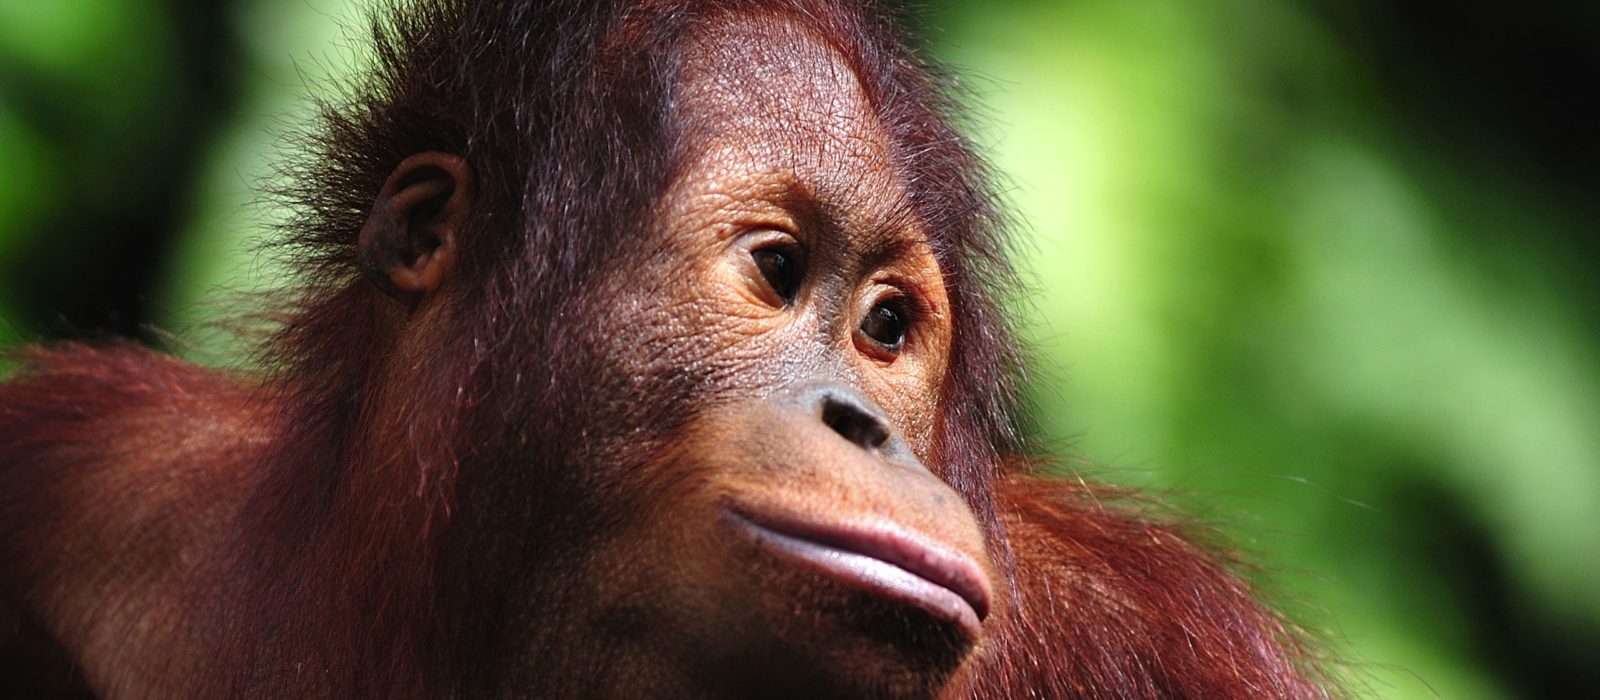 Close up of an orangutang